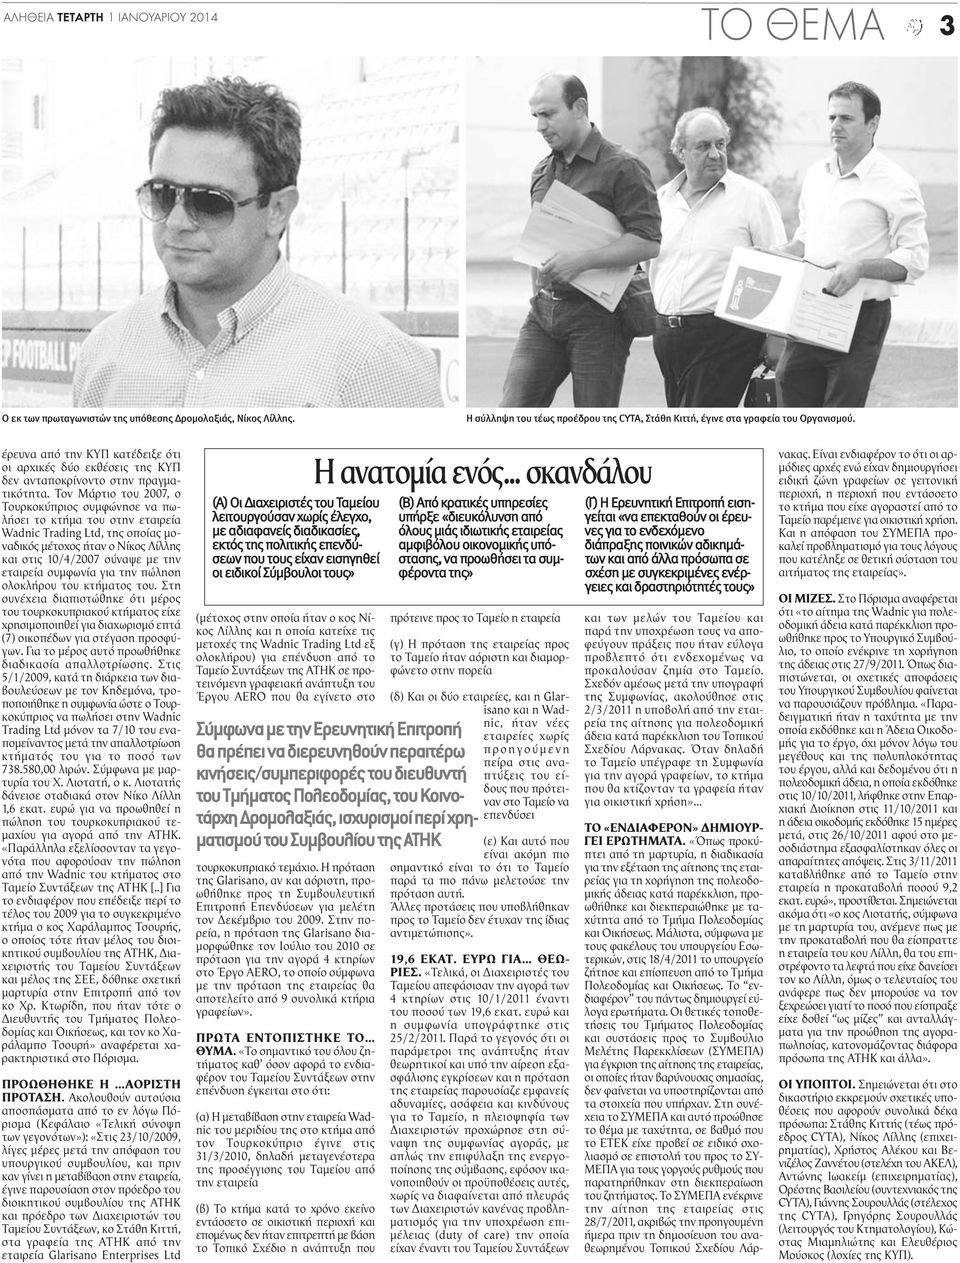 Τον Μάρτιο του 2007, ο Τουρκοκύπριος συμφώνησε να πωλήσει το κτήμα του στην εταιρεία Wadnic Trading Ltd, της οποίας μοναδικός μέτοχος ήταν ο Νίκος Λίλλης και στις 10/4/2007 σύναψε με την εταιρεία